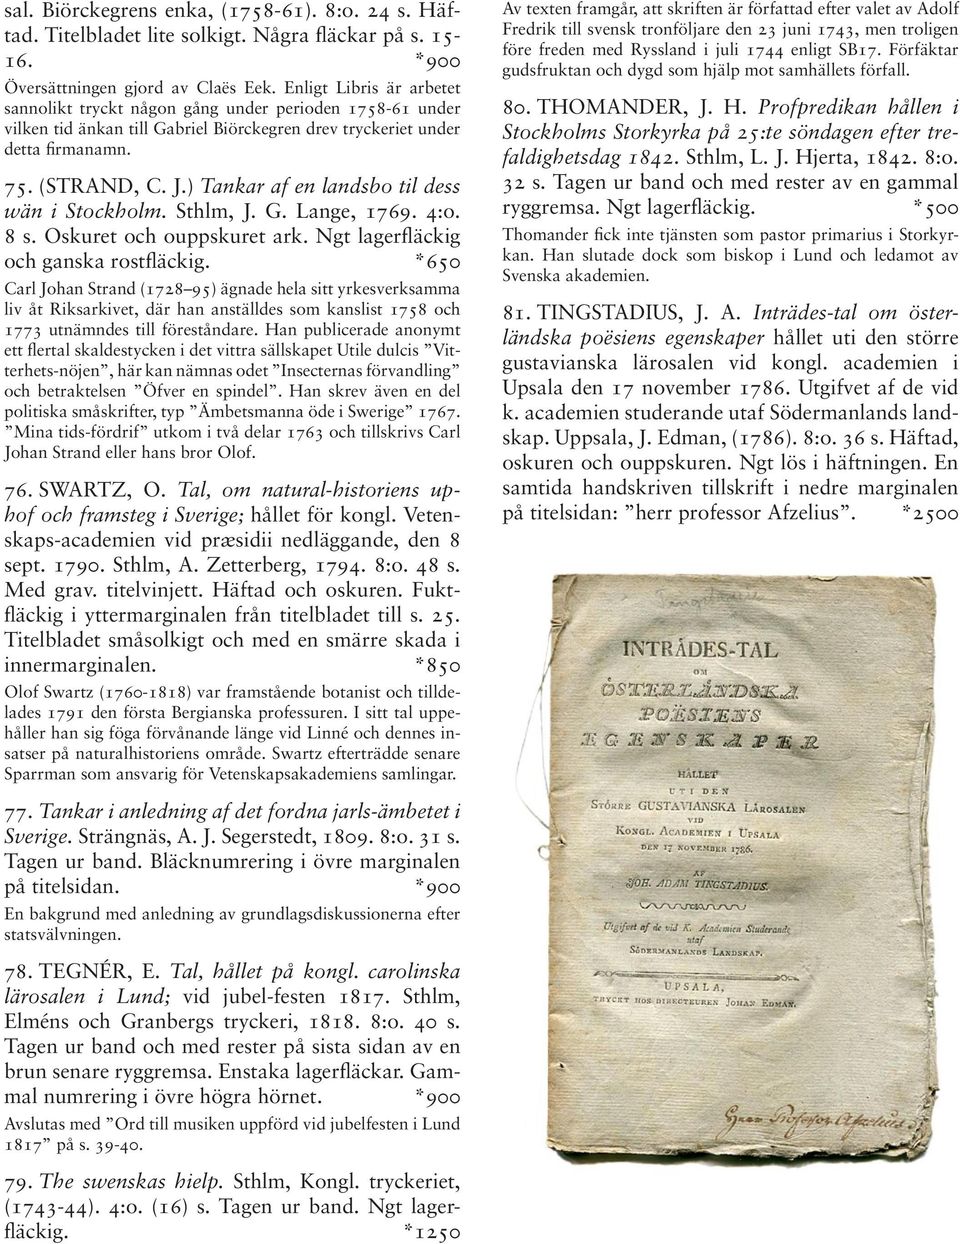 ) Tankar af en landsbo til dess wän i Stockholm. Sthlm, J. G. Lange, 1769. 4:o. 8 s. Oskuret och ouppskuret ark. Ngt lagerfläckig och ganska rostfläckig.